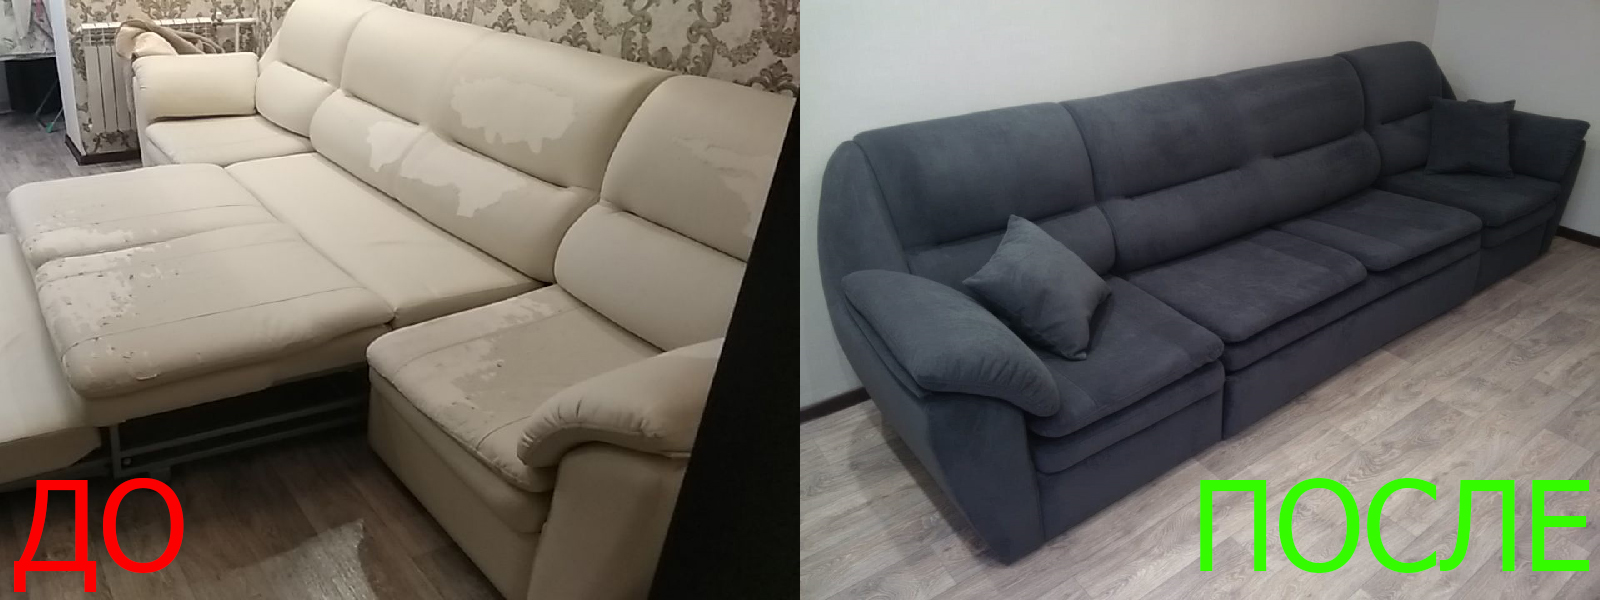 Обтяжка мягкой мебели в Керчи - разумная стоимость, расчет по фото, высокое качество работы